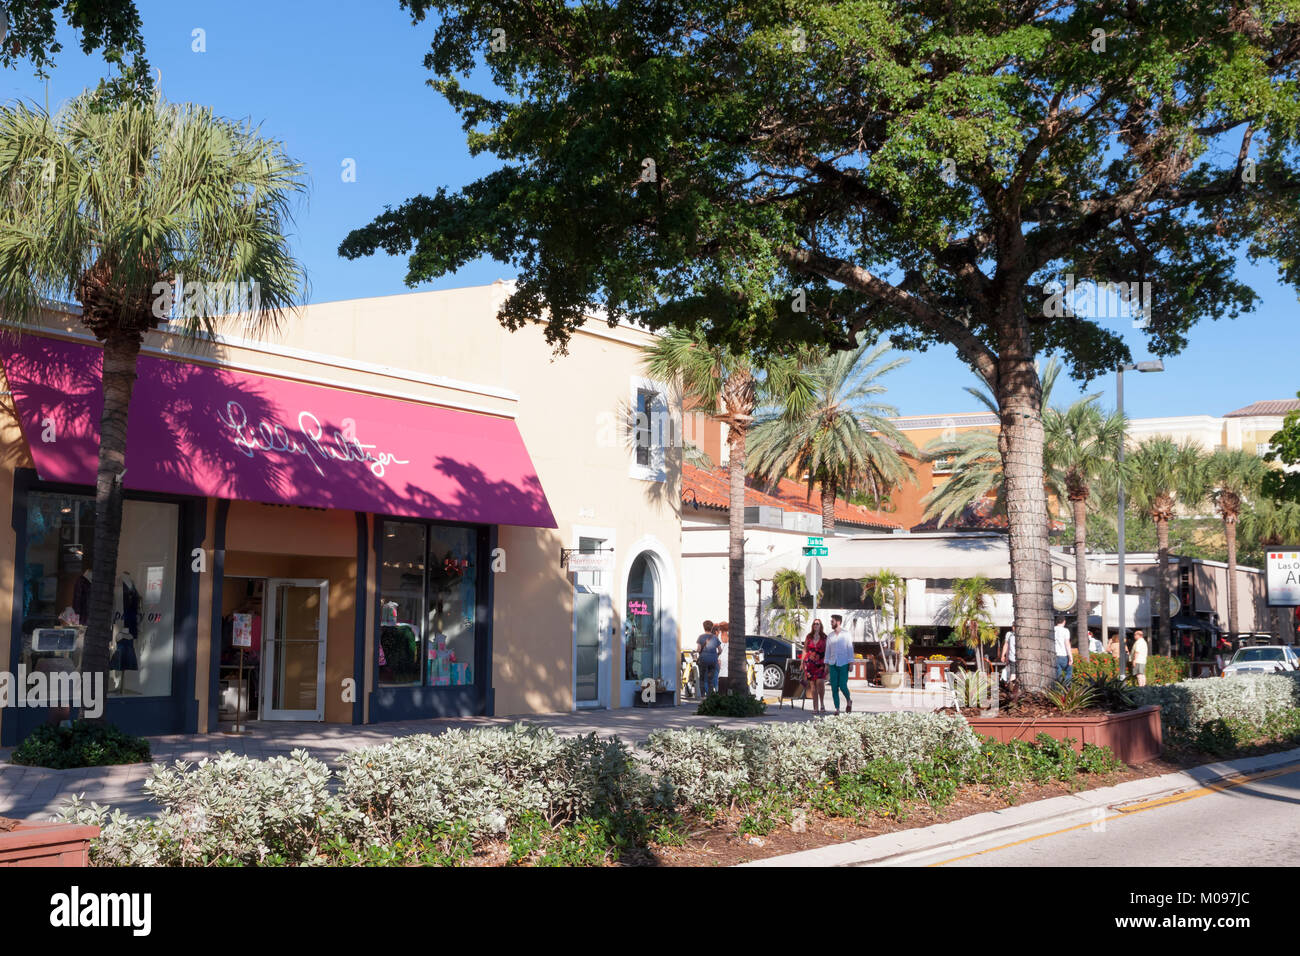 La gente caminando a lo largo de Las Olas Boulevard en el centro de Fort Lauderdale, Florida, Estados Unidos, USA. Foto de stock